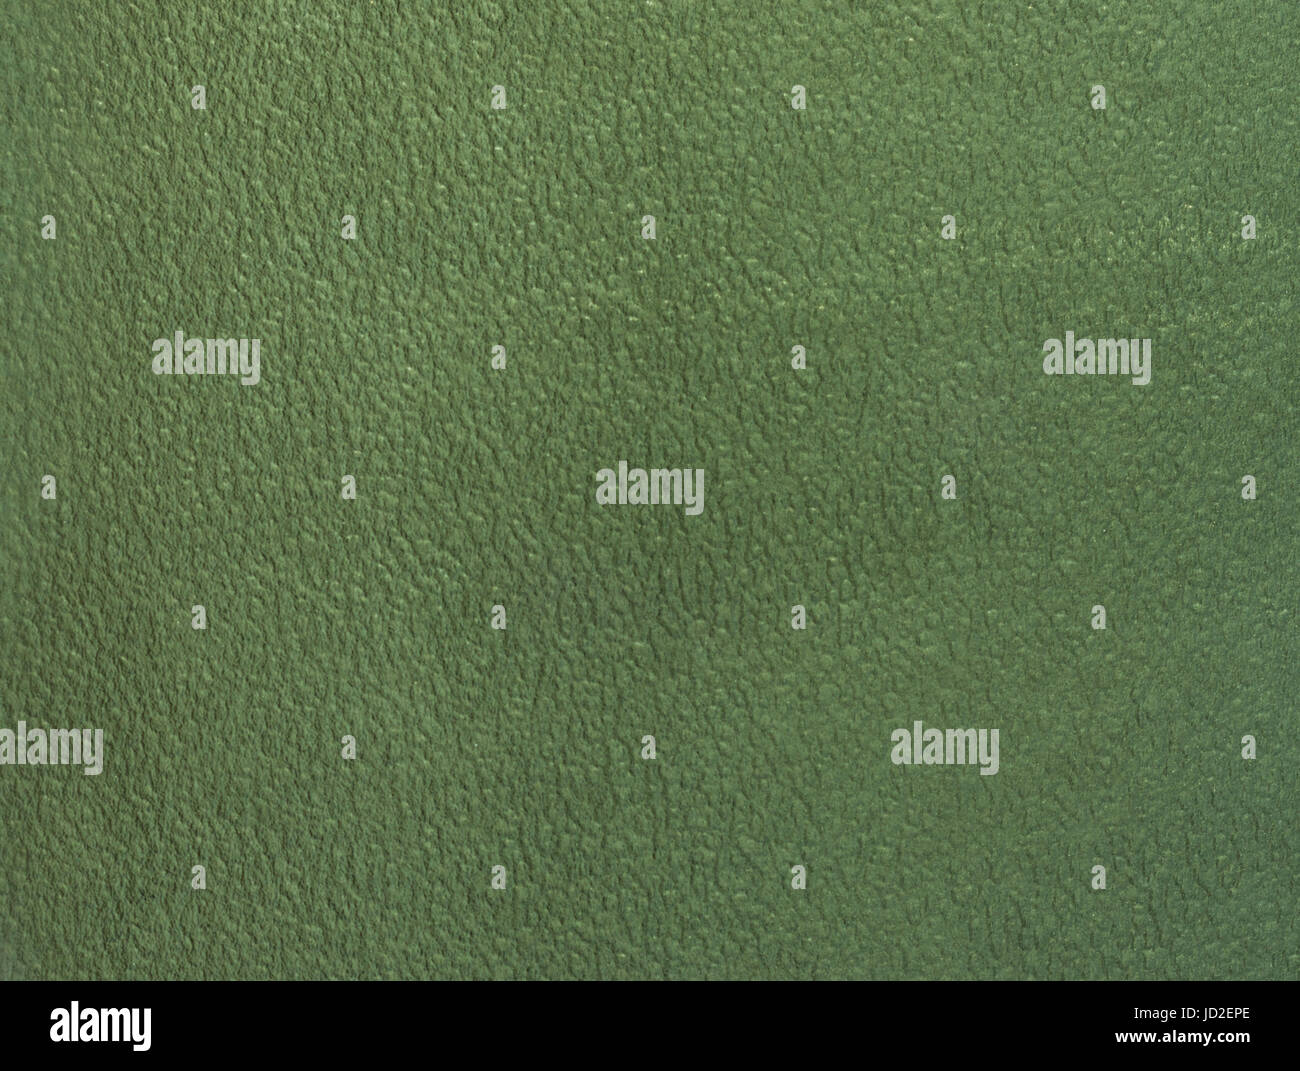 Grande ripple texture di erba per uno sfondo. Foto Stock